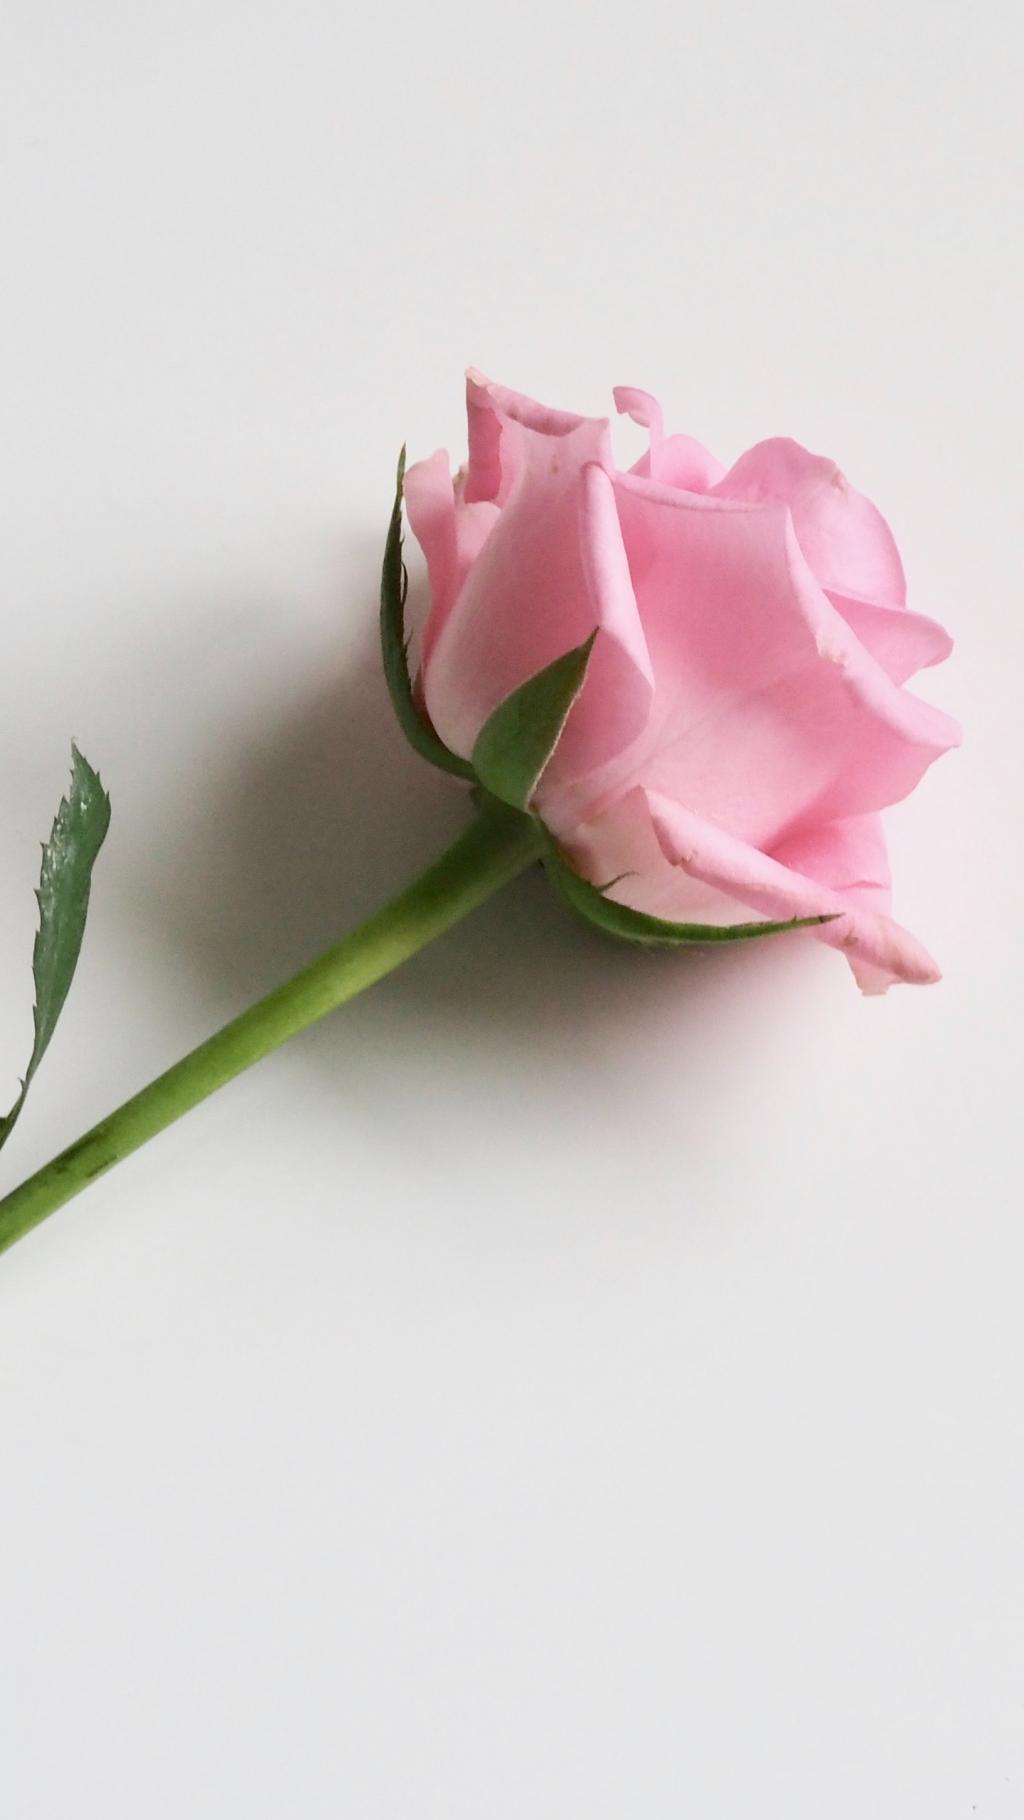 一枝玫瑰花代表爱的宣言铭记于心